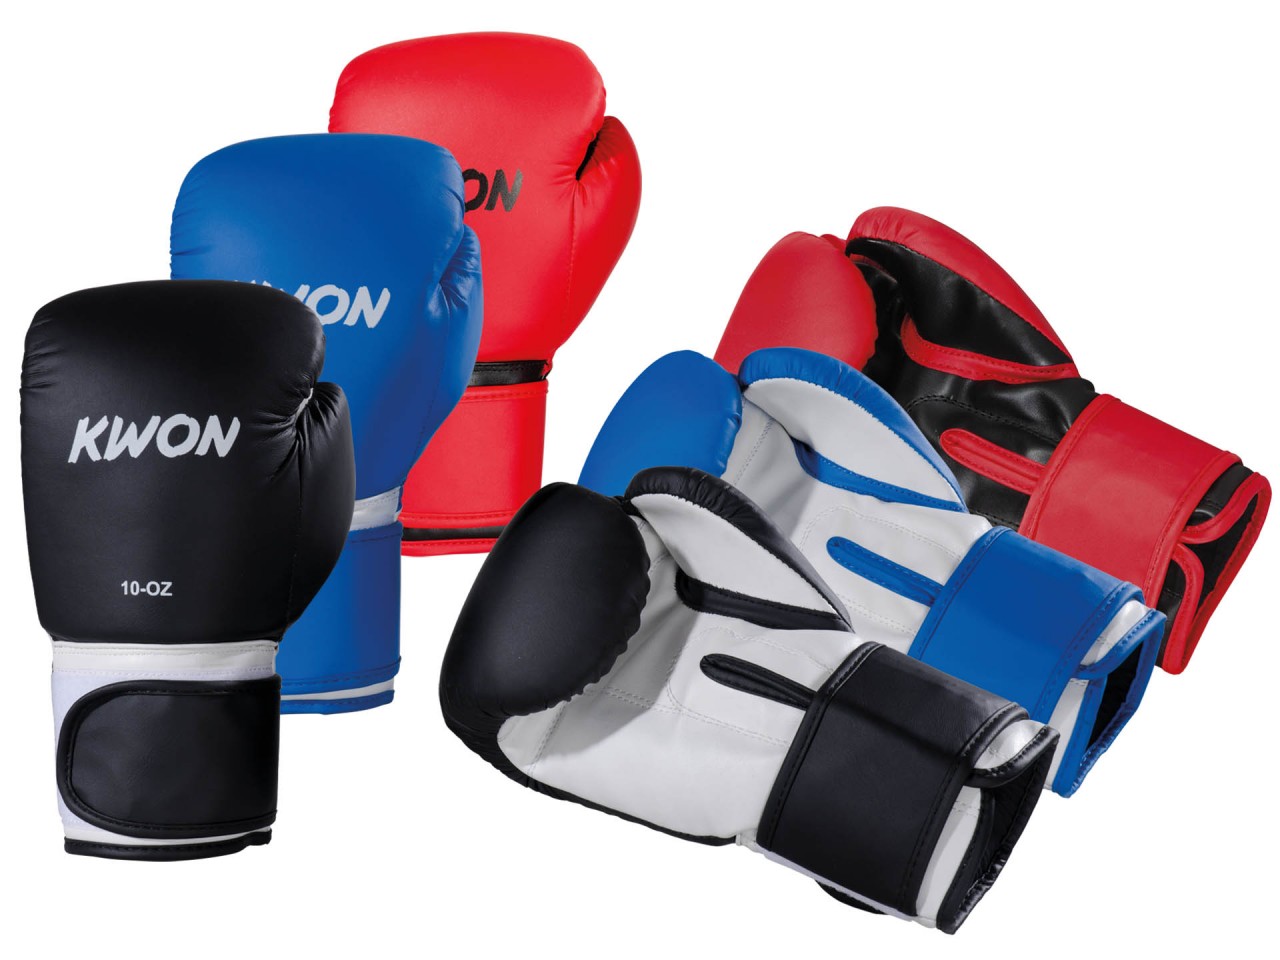 KWON Fitness Boxhandschuhe - Gewicht: oz, oz, oz, oz 16 10 8 12 oz, 14